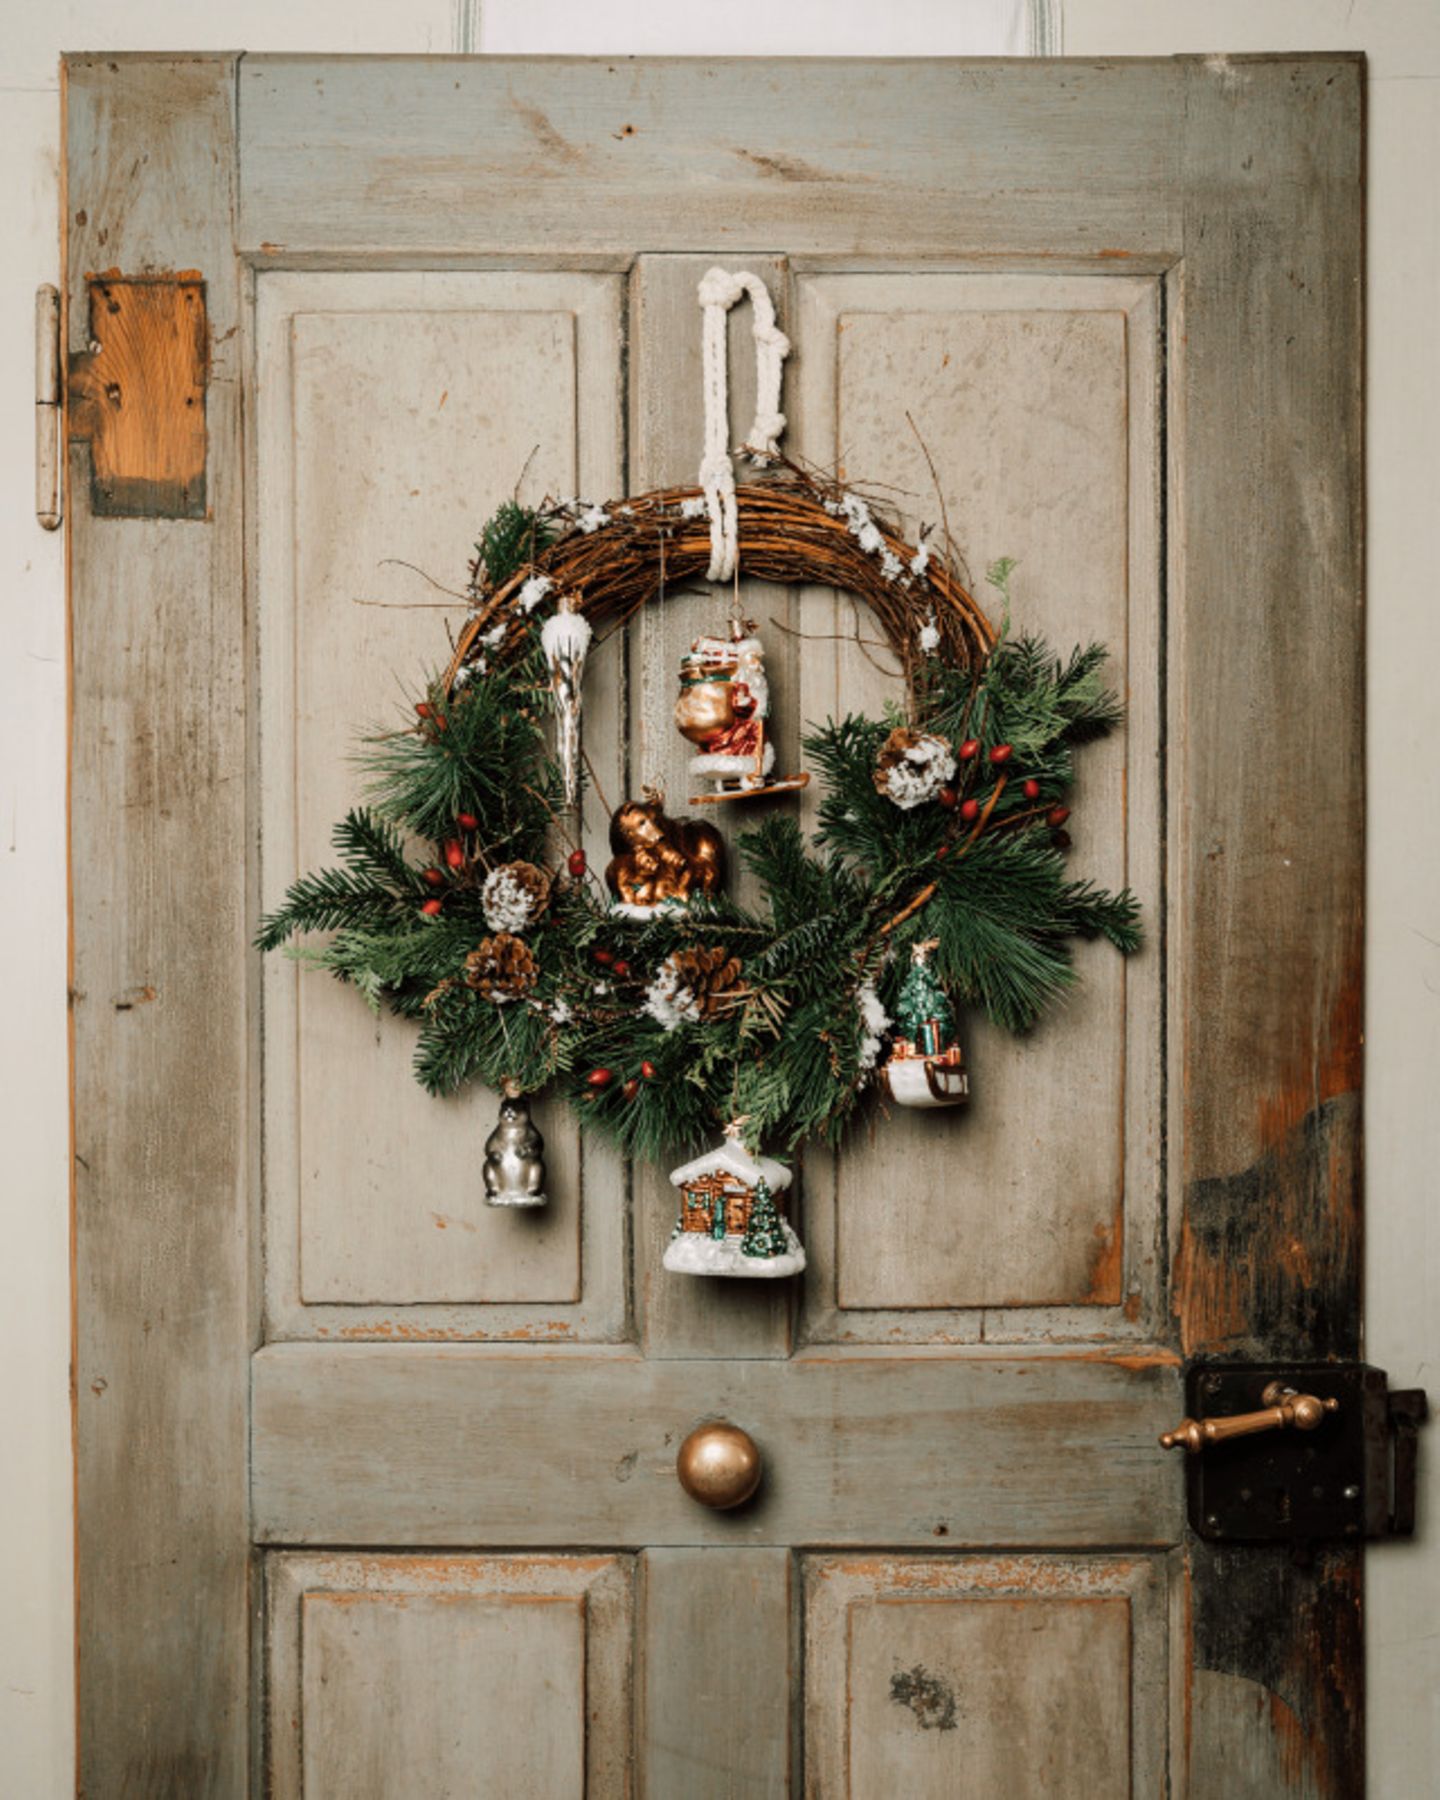 Türkranz mit Weihnachtsornamenten vor einer hellen Holztür